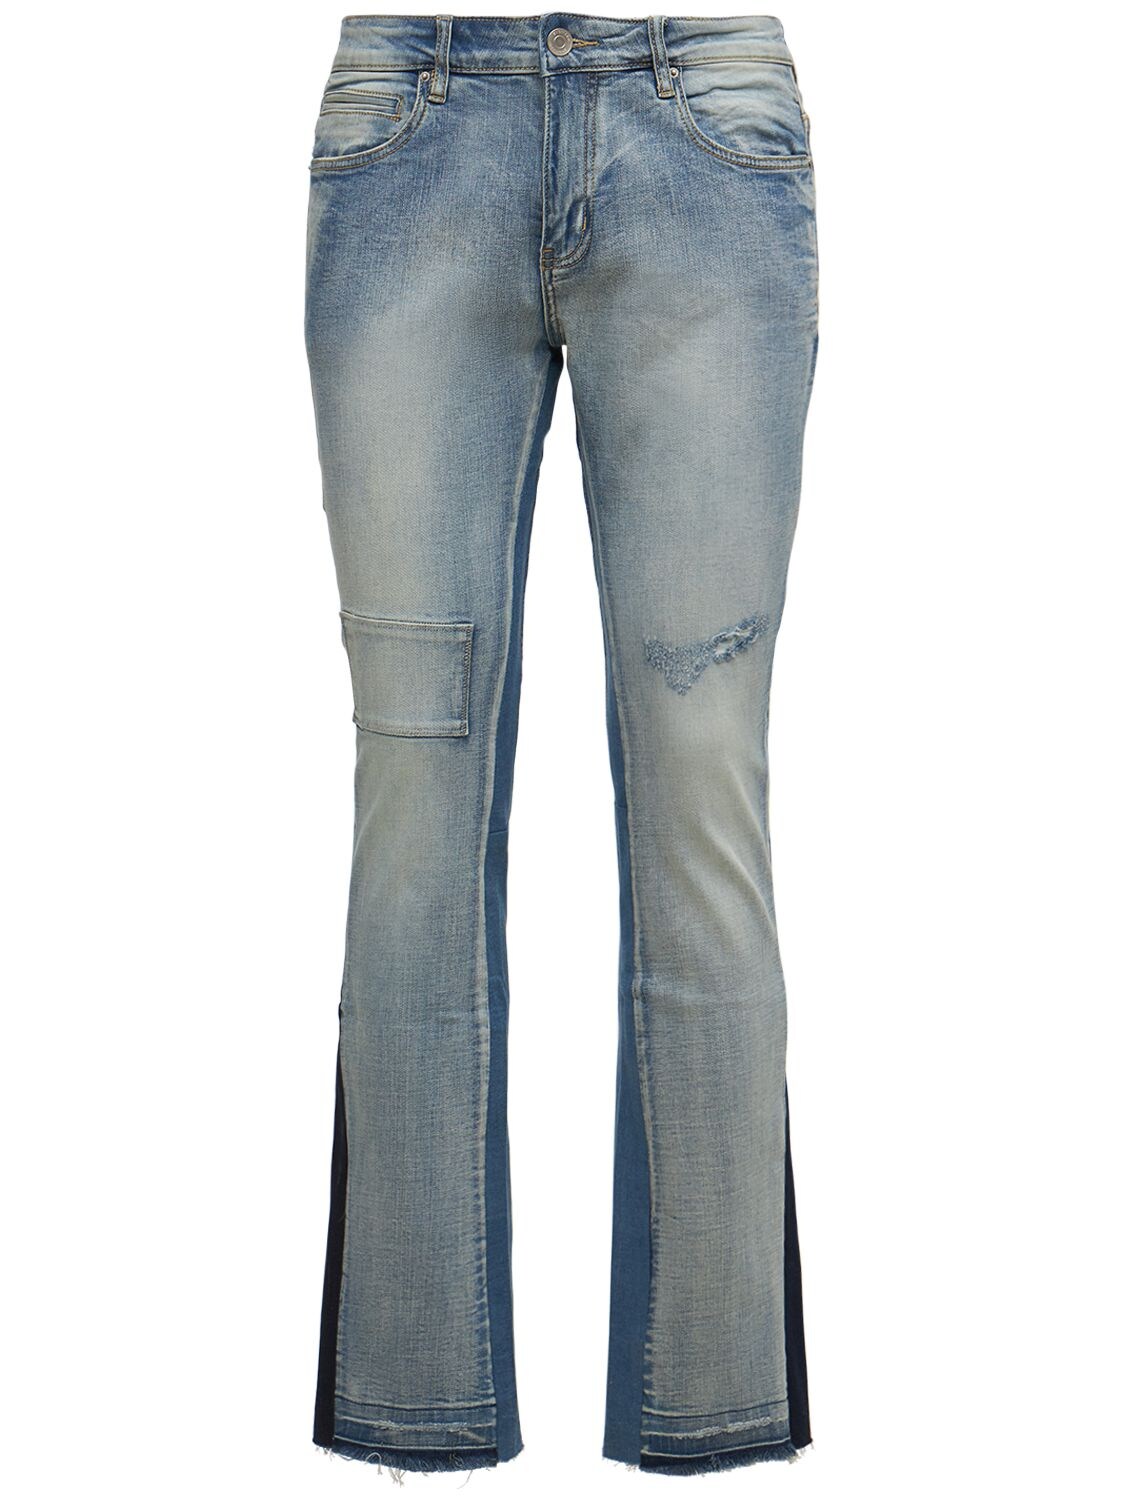 Hombre Jeans Acampanados Ric En Dos Tonos 30 - EMBELLISH - Modalova